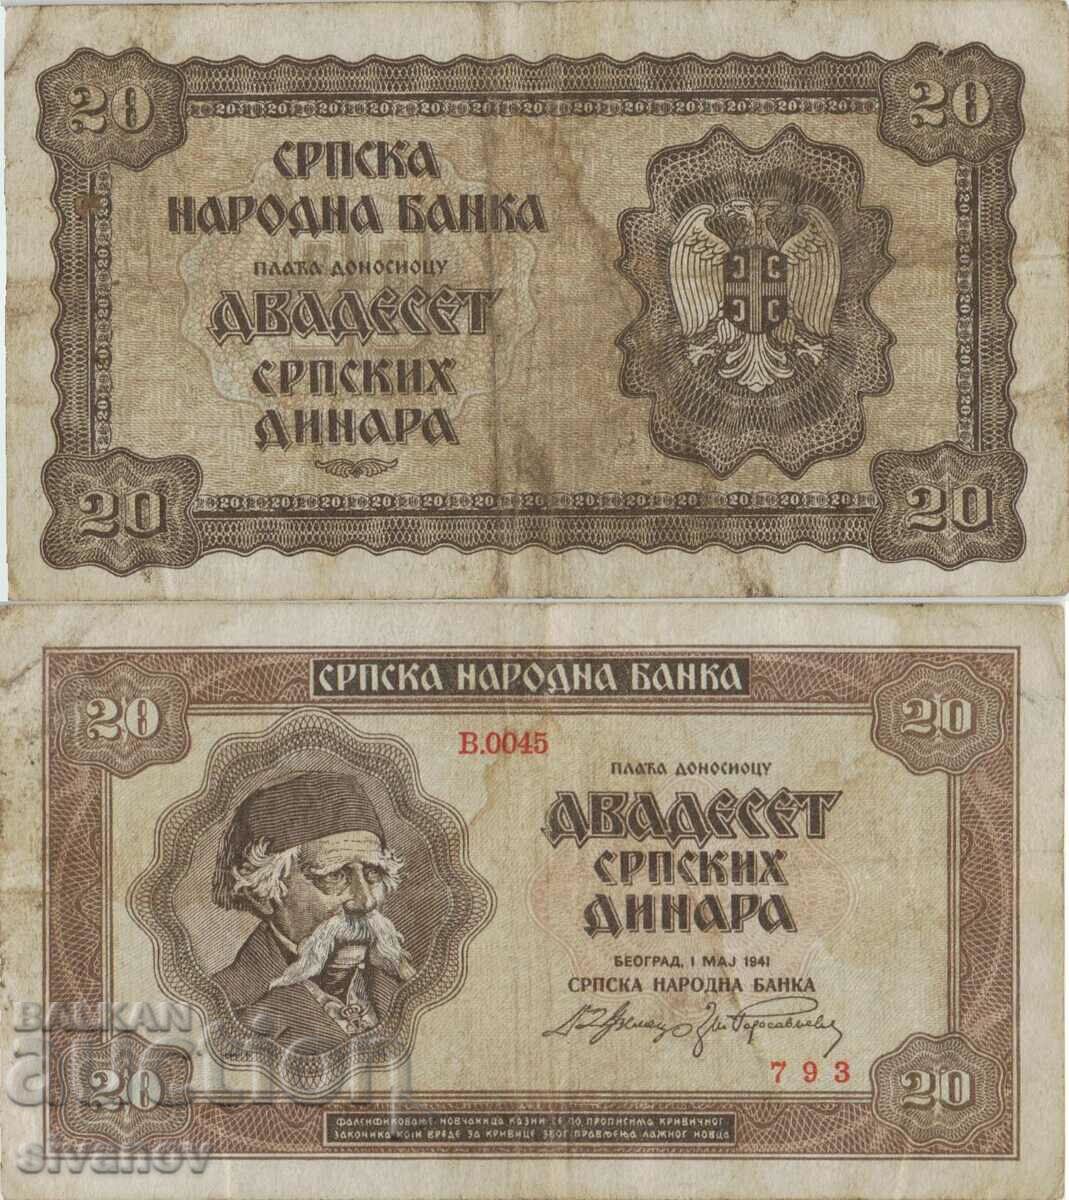 Serbia 20 dinari 1941 anul #4926